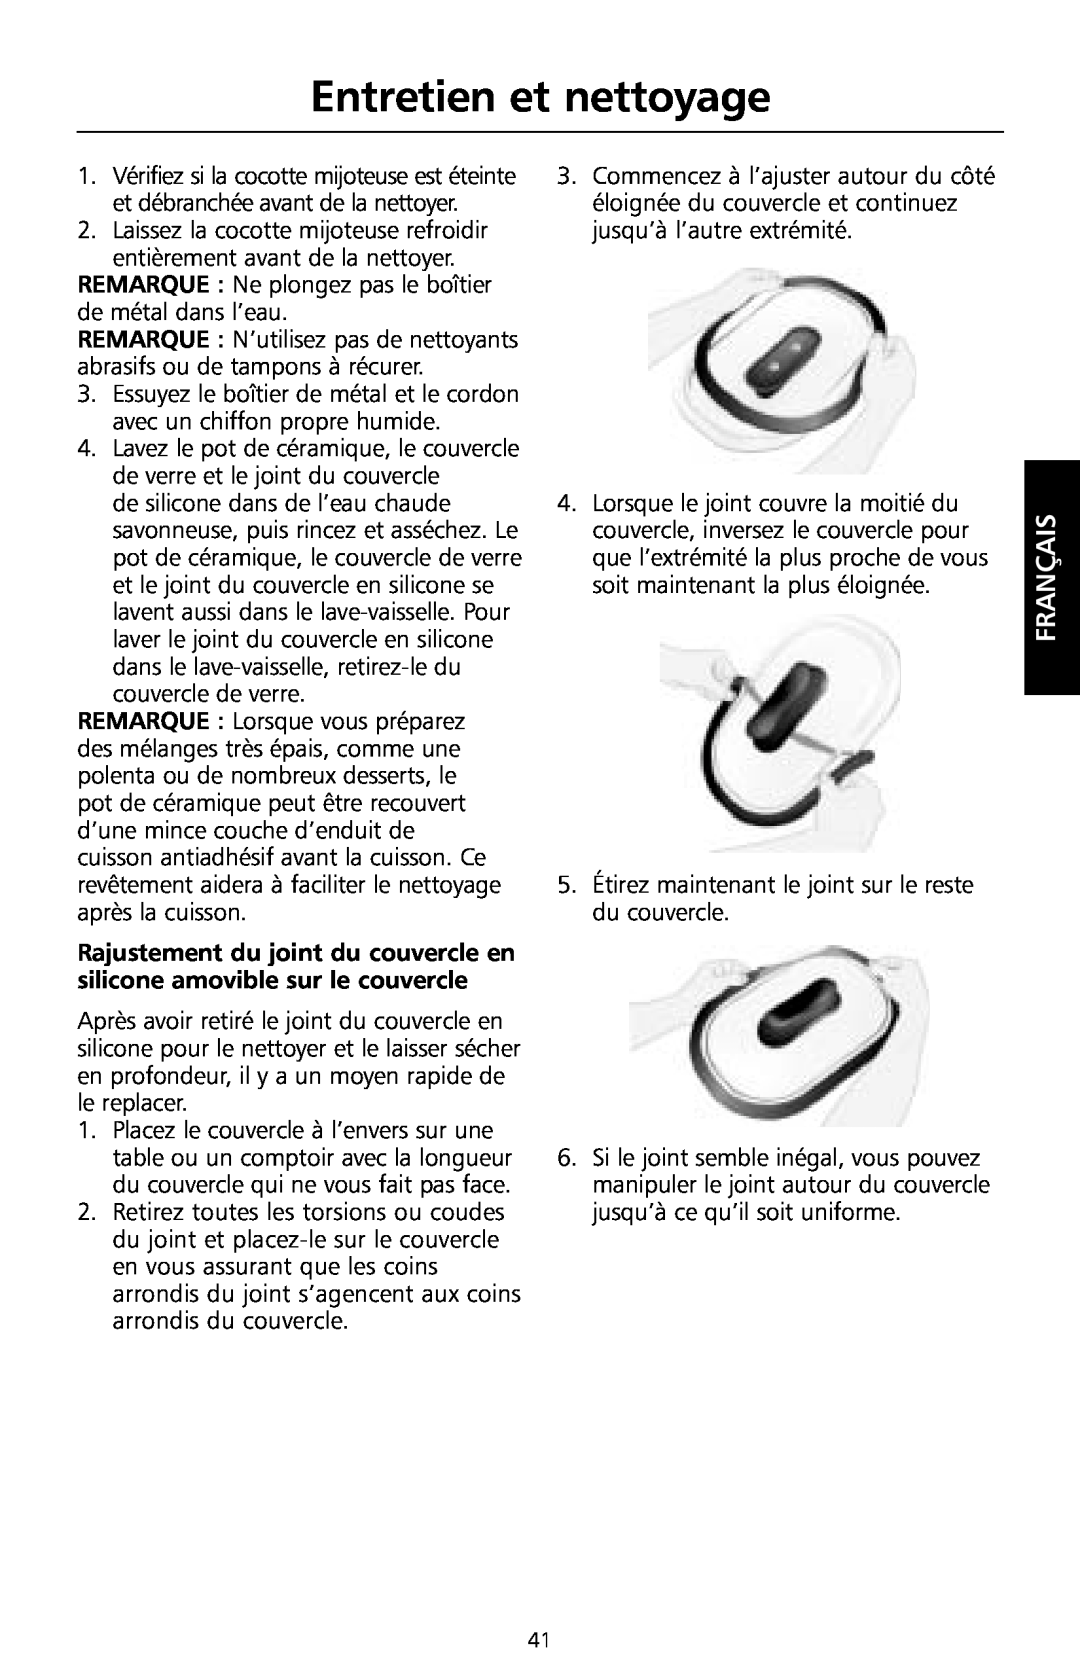 KitchenAid KSC700 manual Entretien et nettoyage, Français 